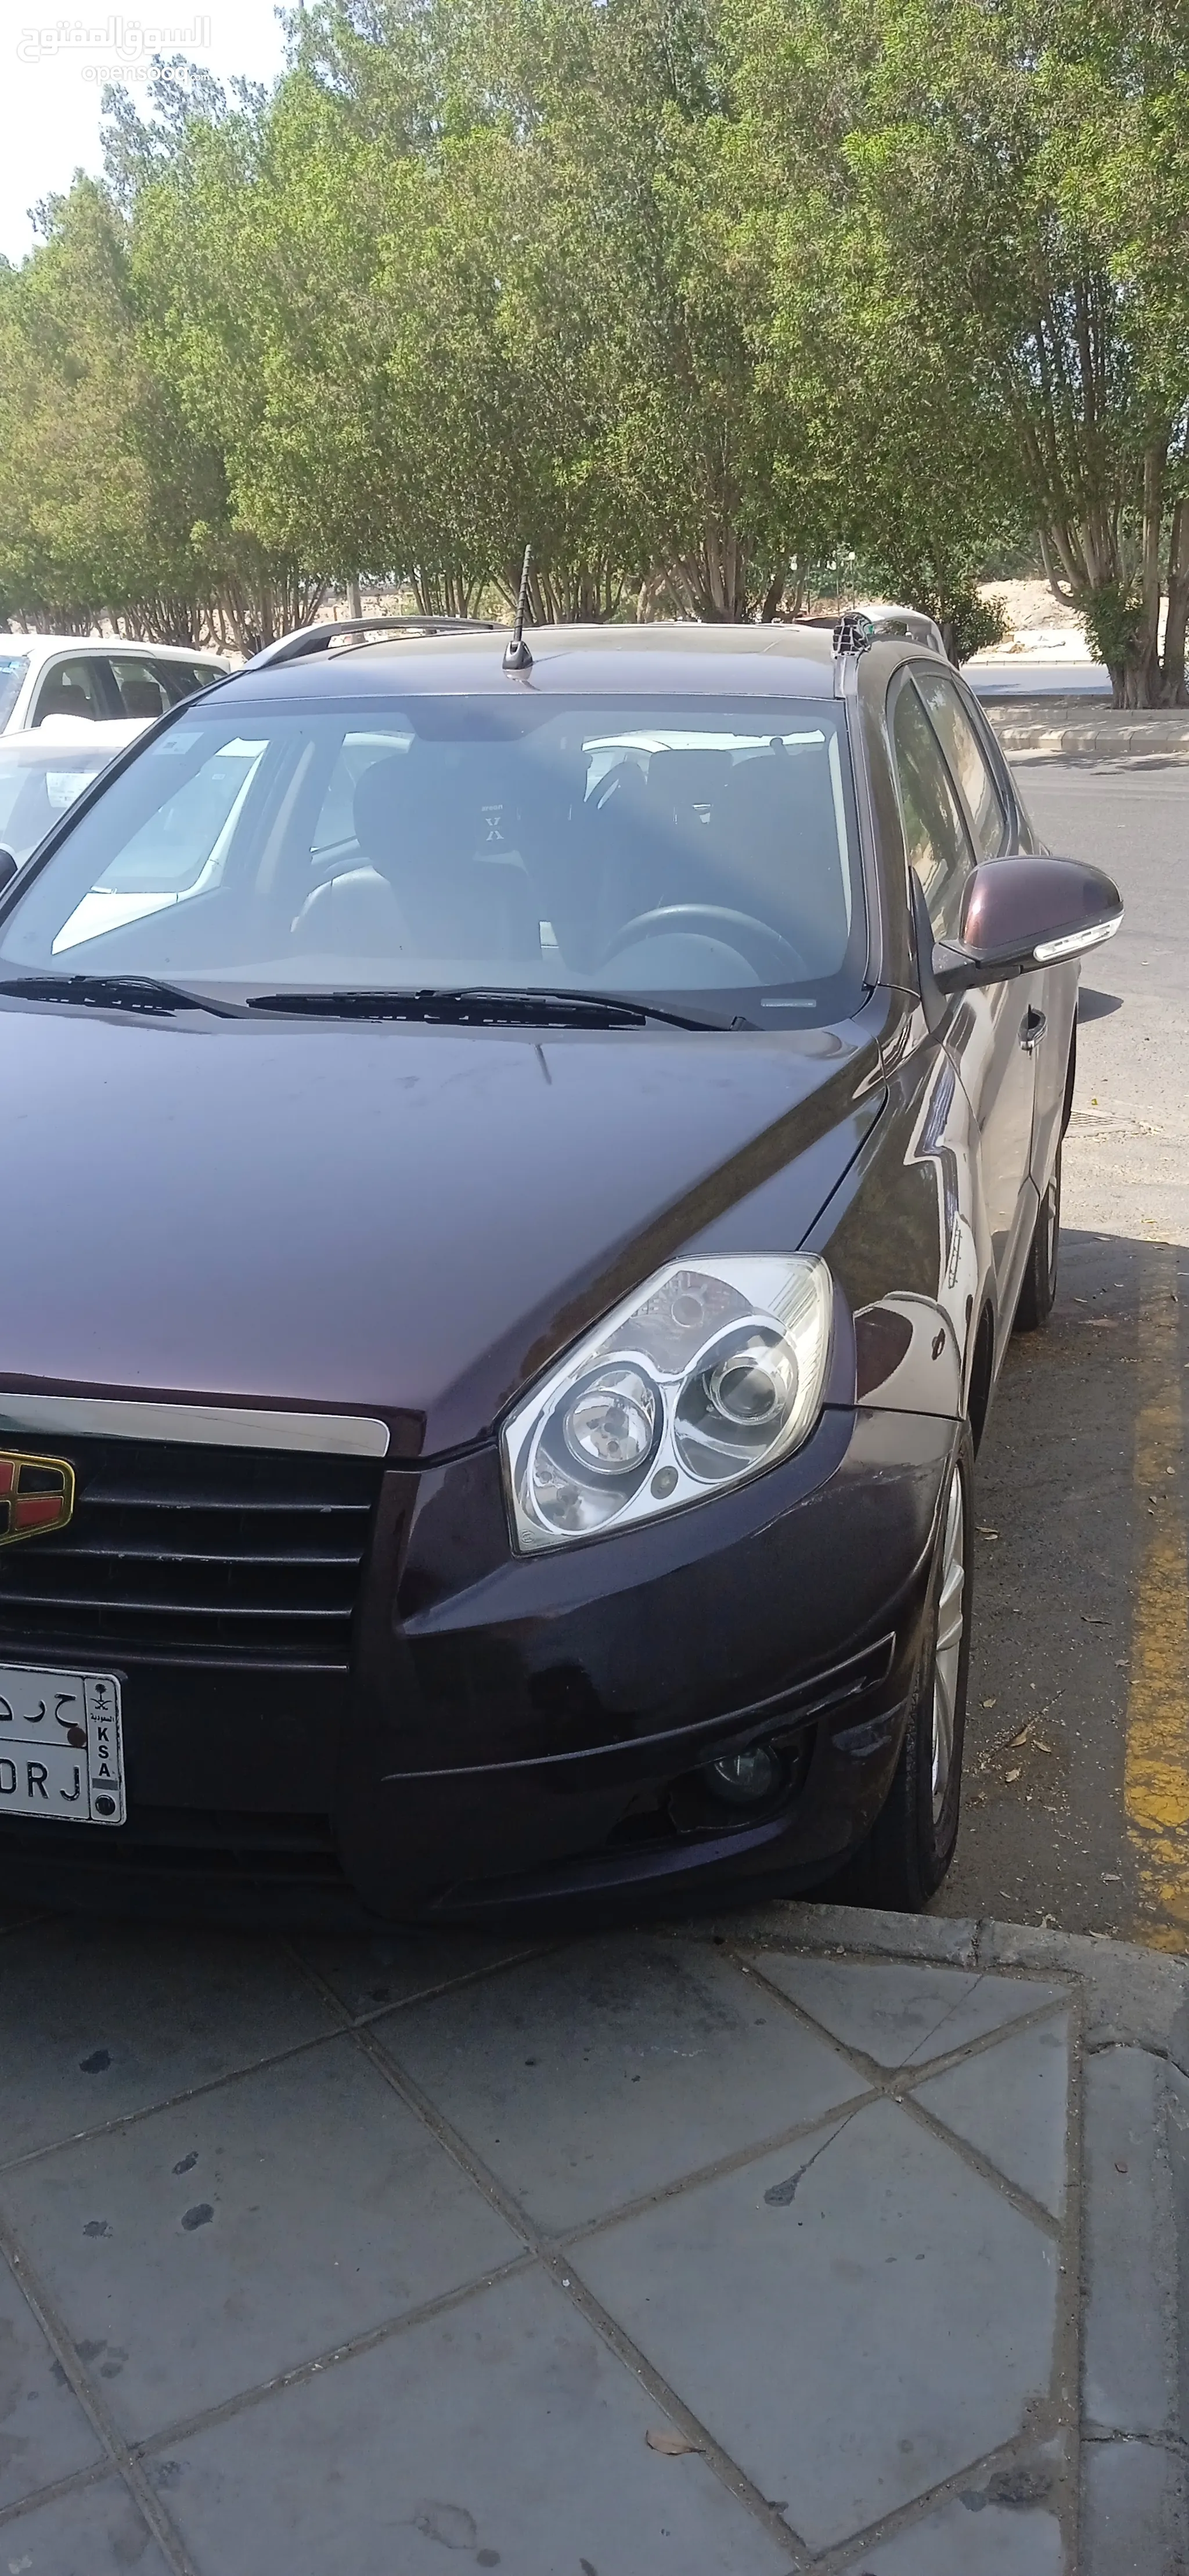 سيارات جيلي للبيع : ارخص الاسعار في جدة : جميع موديلات سيارة جيلي : مستعملة  وجديدة | السوق المفتوح